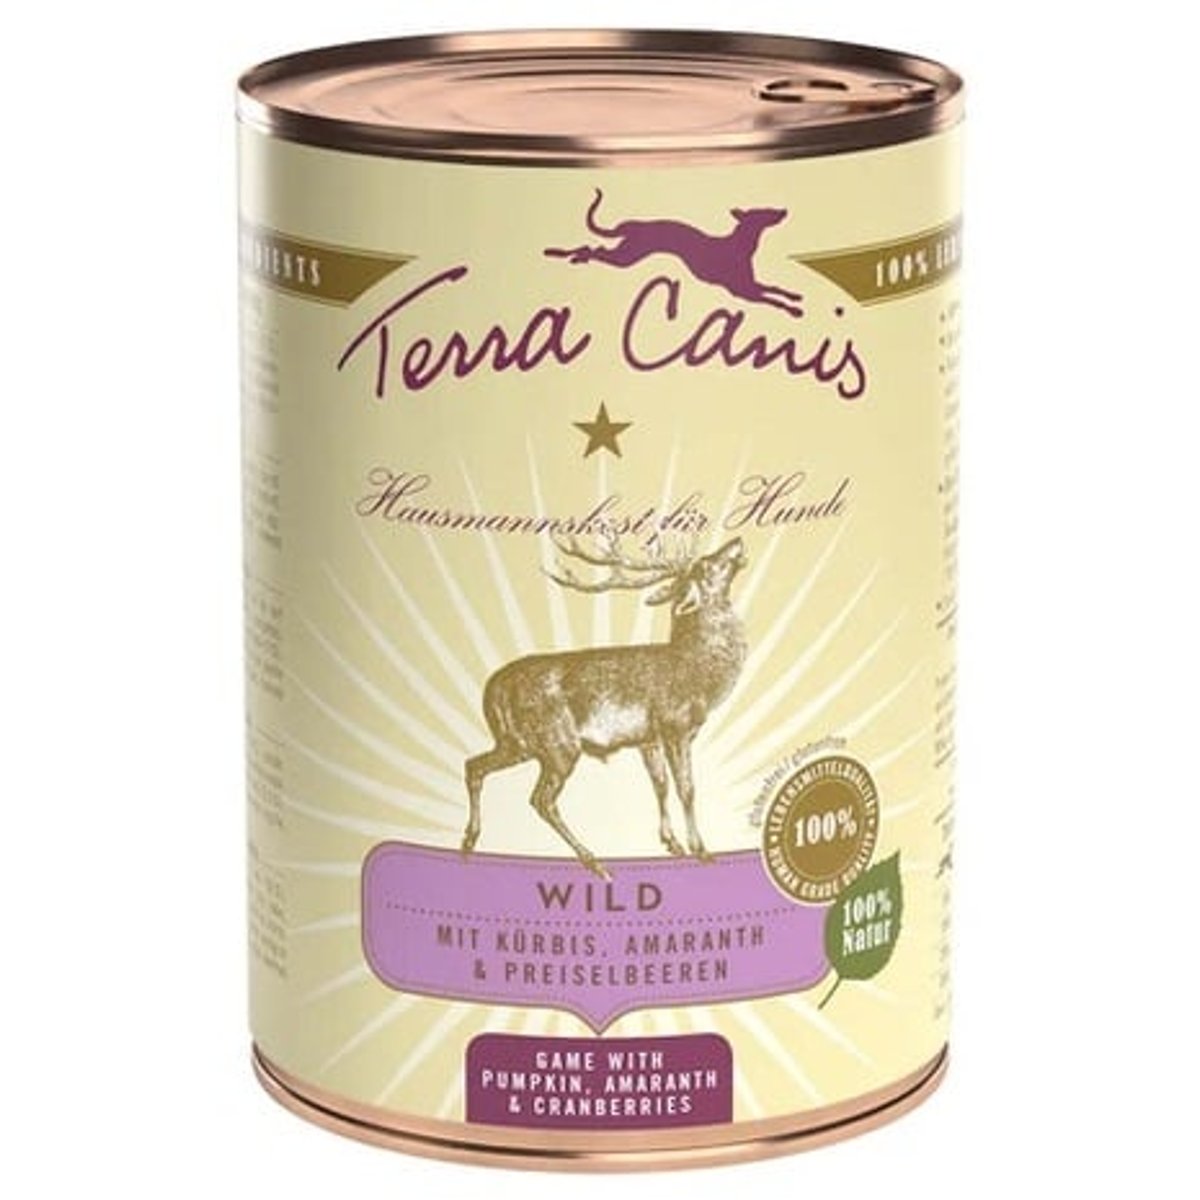 Terra Canis Konzerva zvěřina s dýní, brusinkami a amarantem pro psy